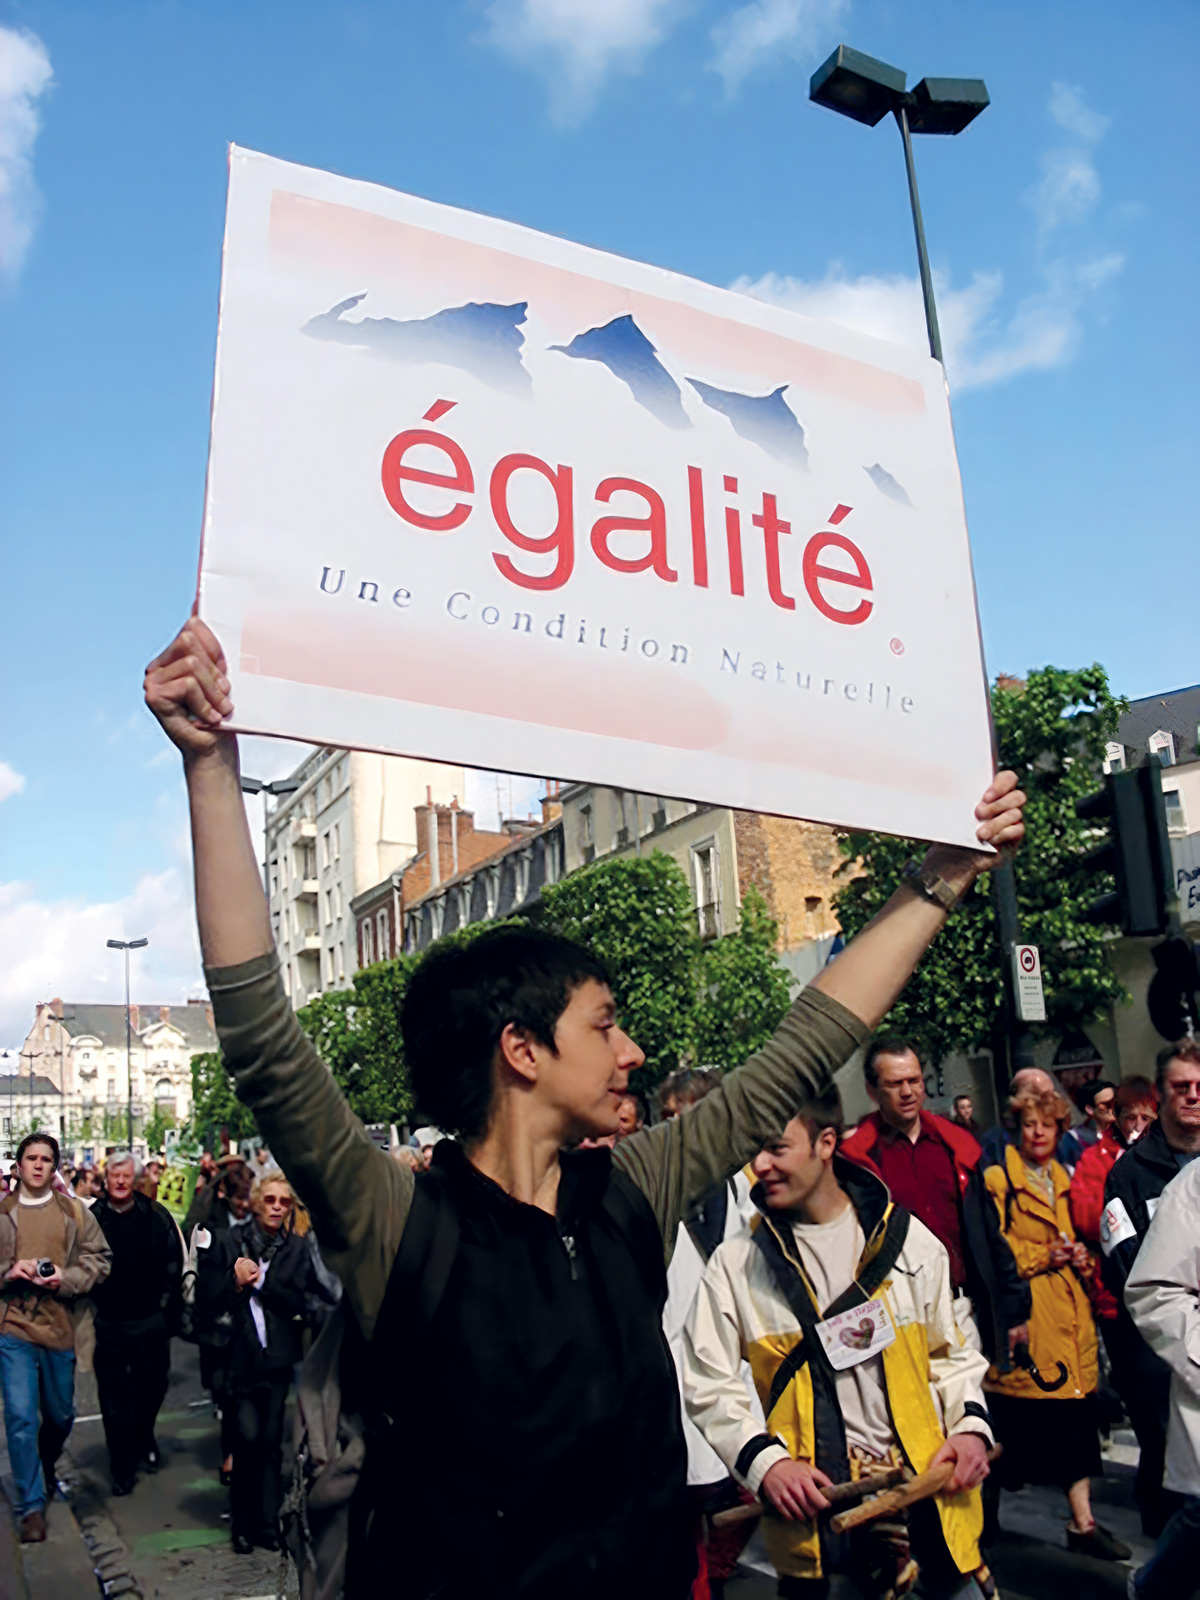 Minerva Cuevas, *Égalité*, 2001, repartición de carteles en manifestación en Rennes, Francia